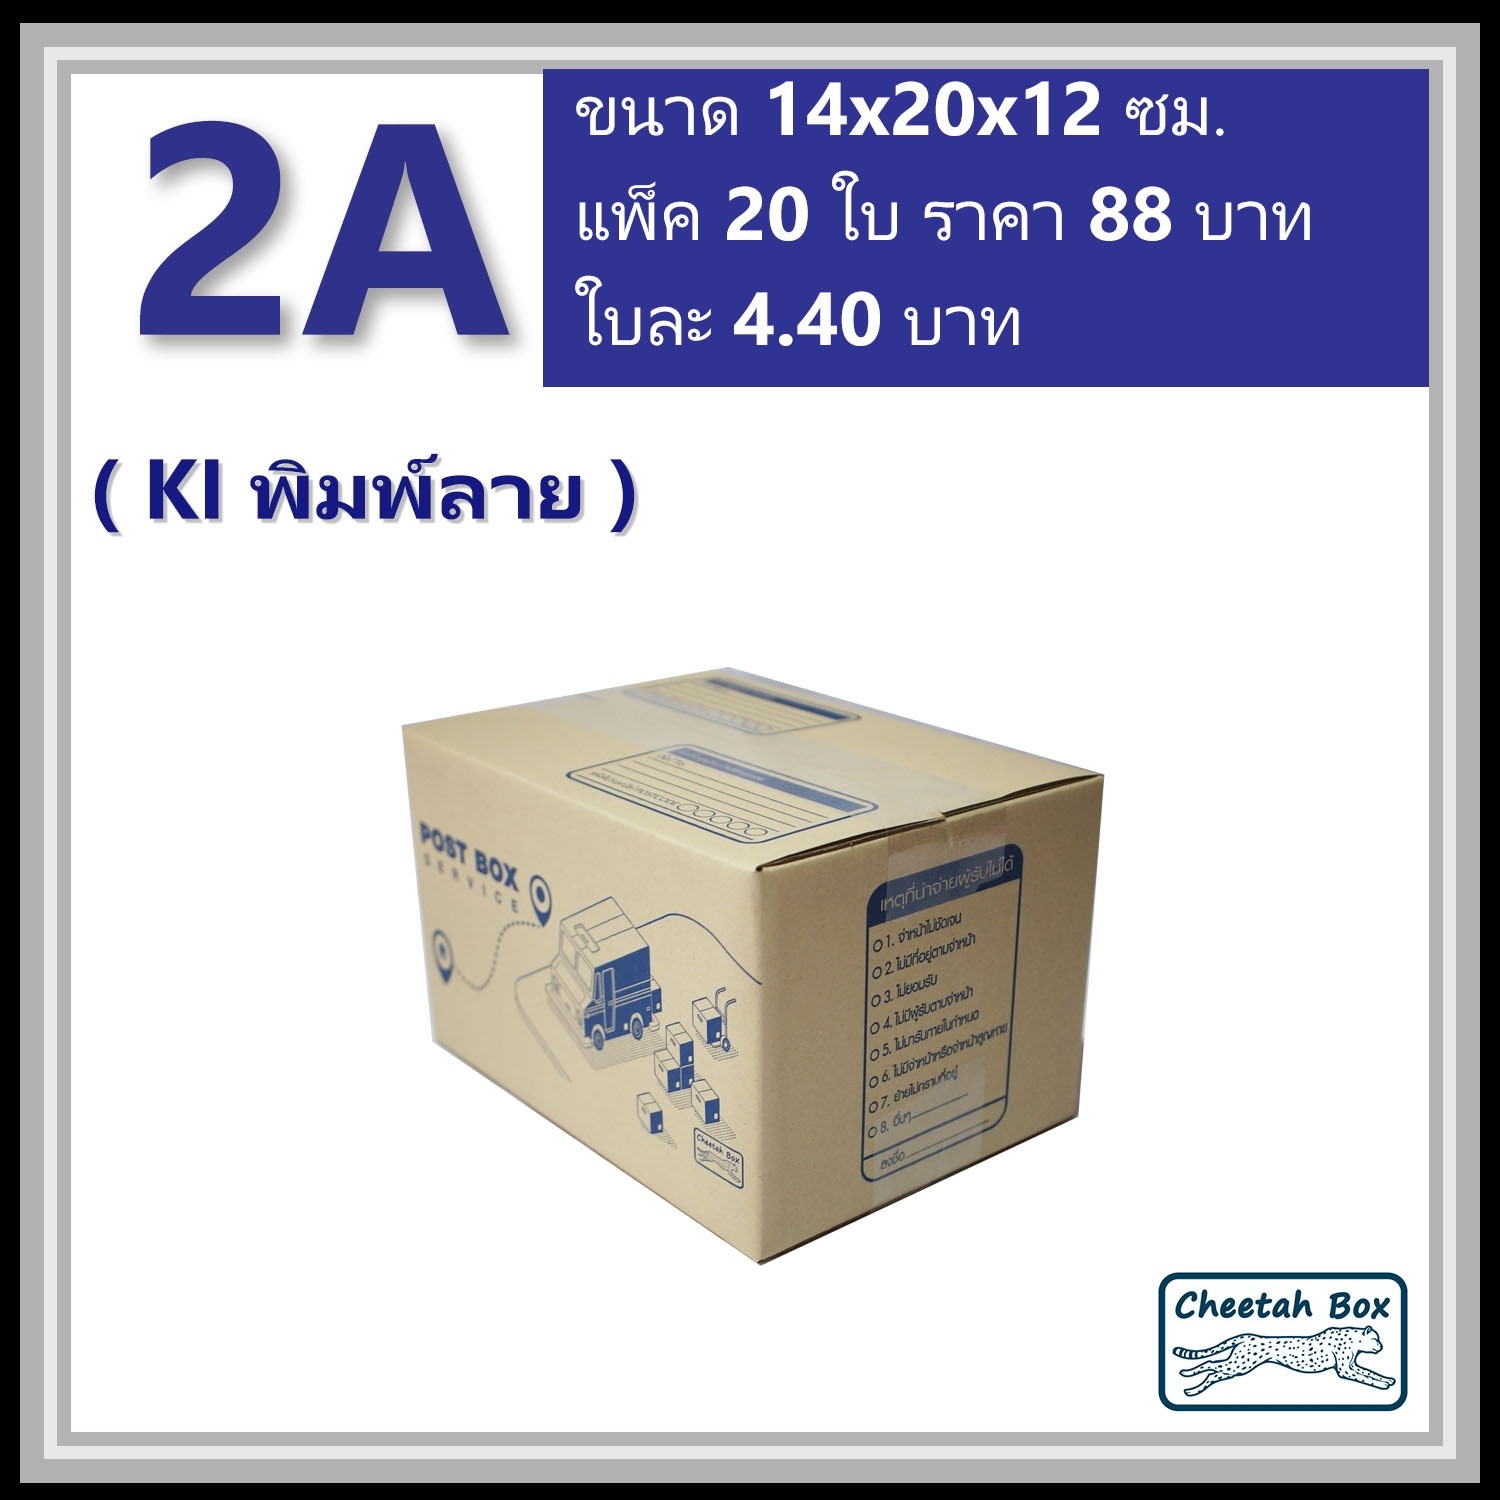 กล่องไปรษณีย์ 2A (Cheetah Box ขนาด 14*20*12 CM)